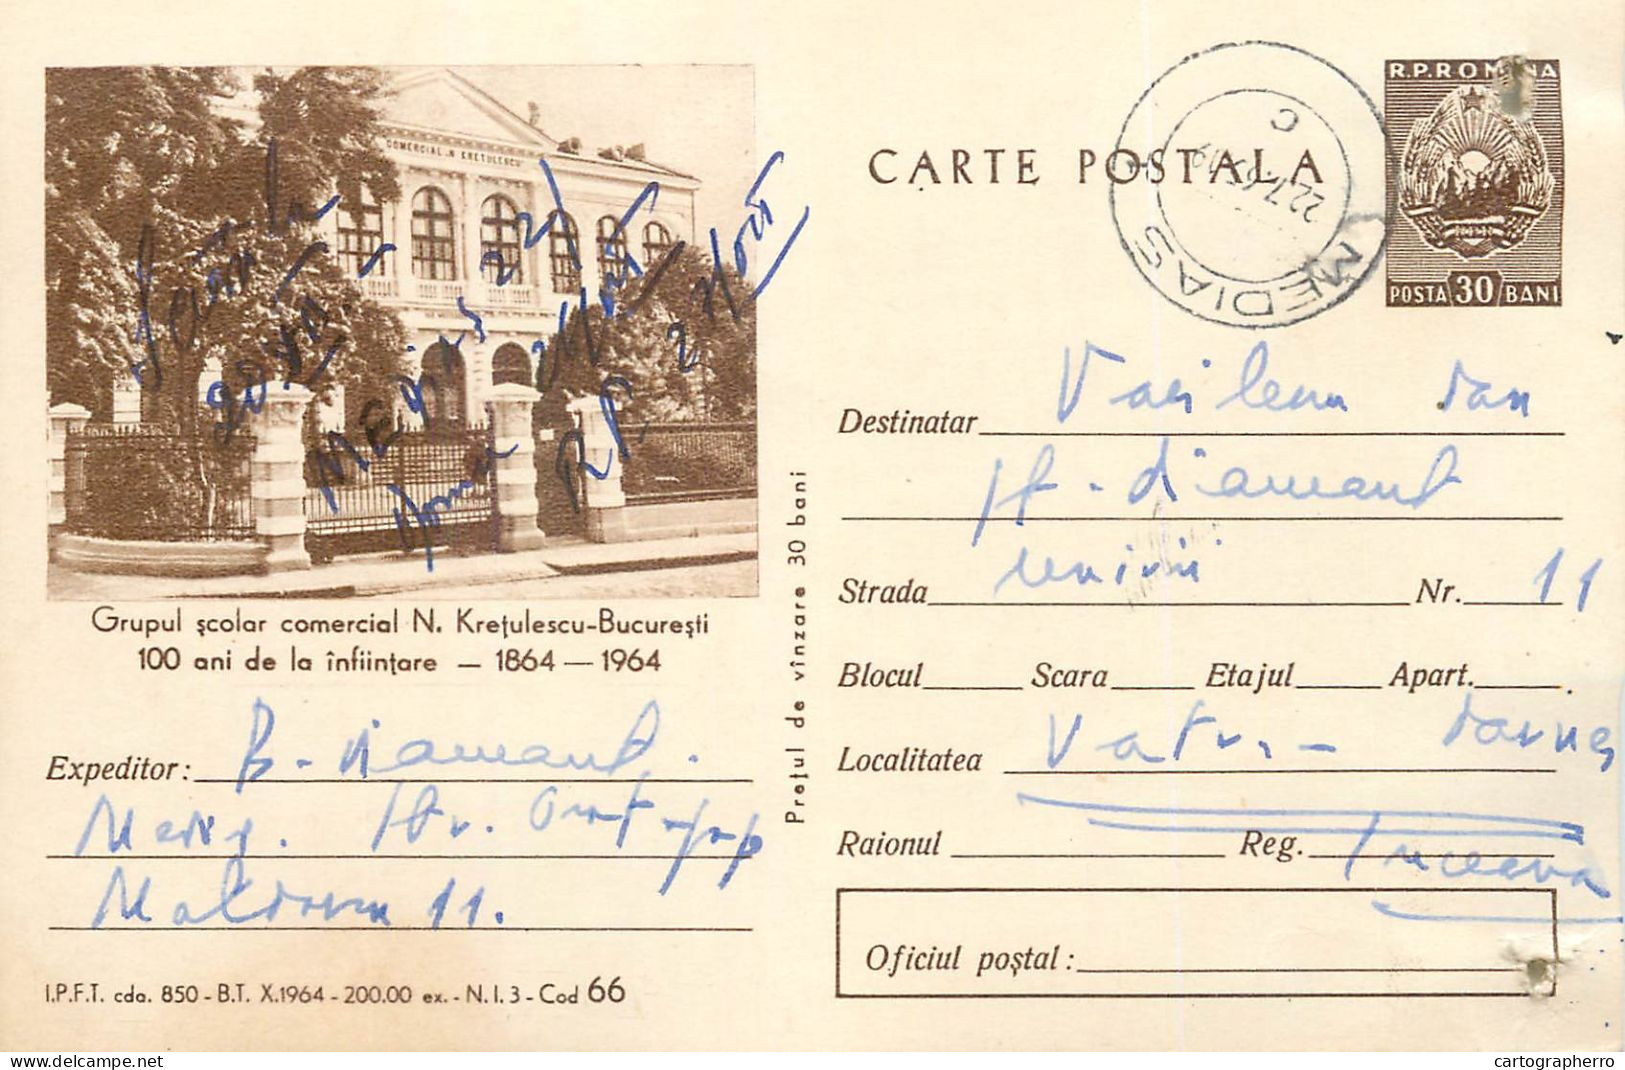 Postal Stationery Postcard Romania Grup Scolar Comercial N. Kretulescu Bucuresti - Rumania